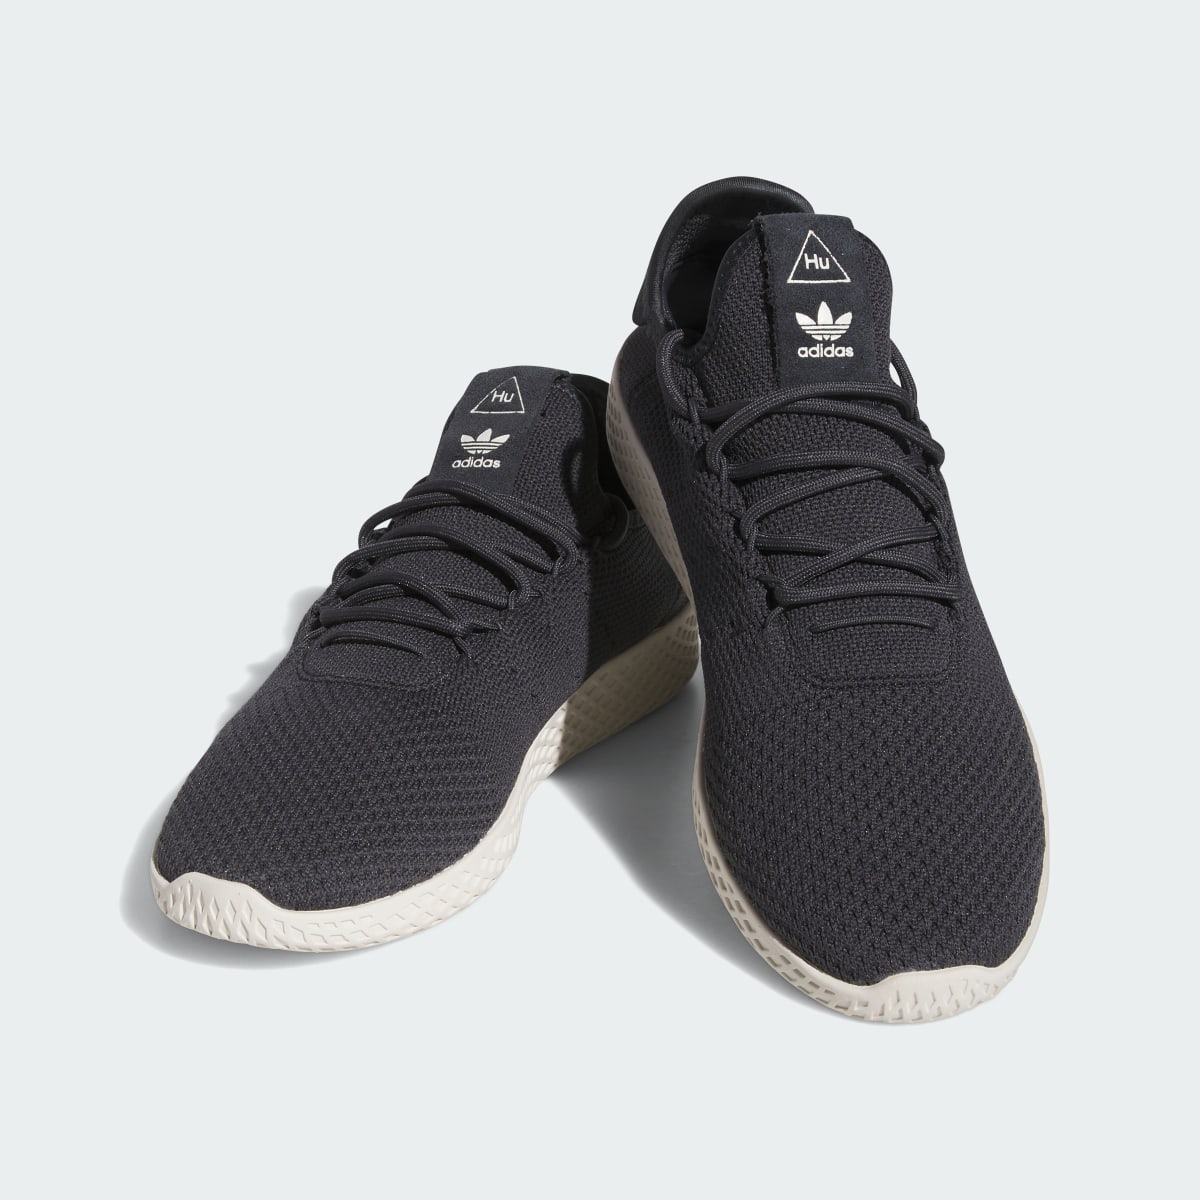 Adidas Tennis Hu Shoes. 5